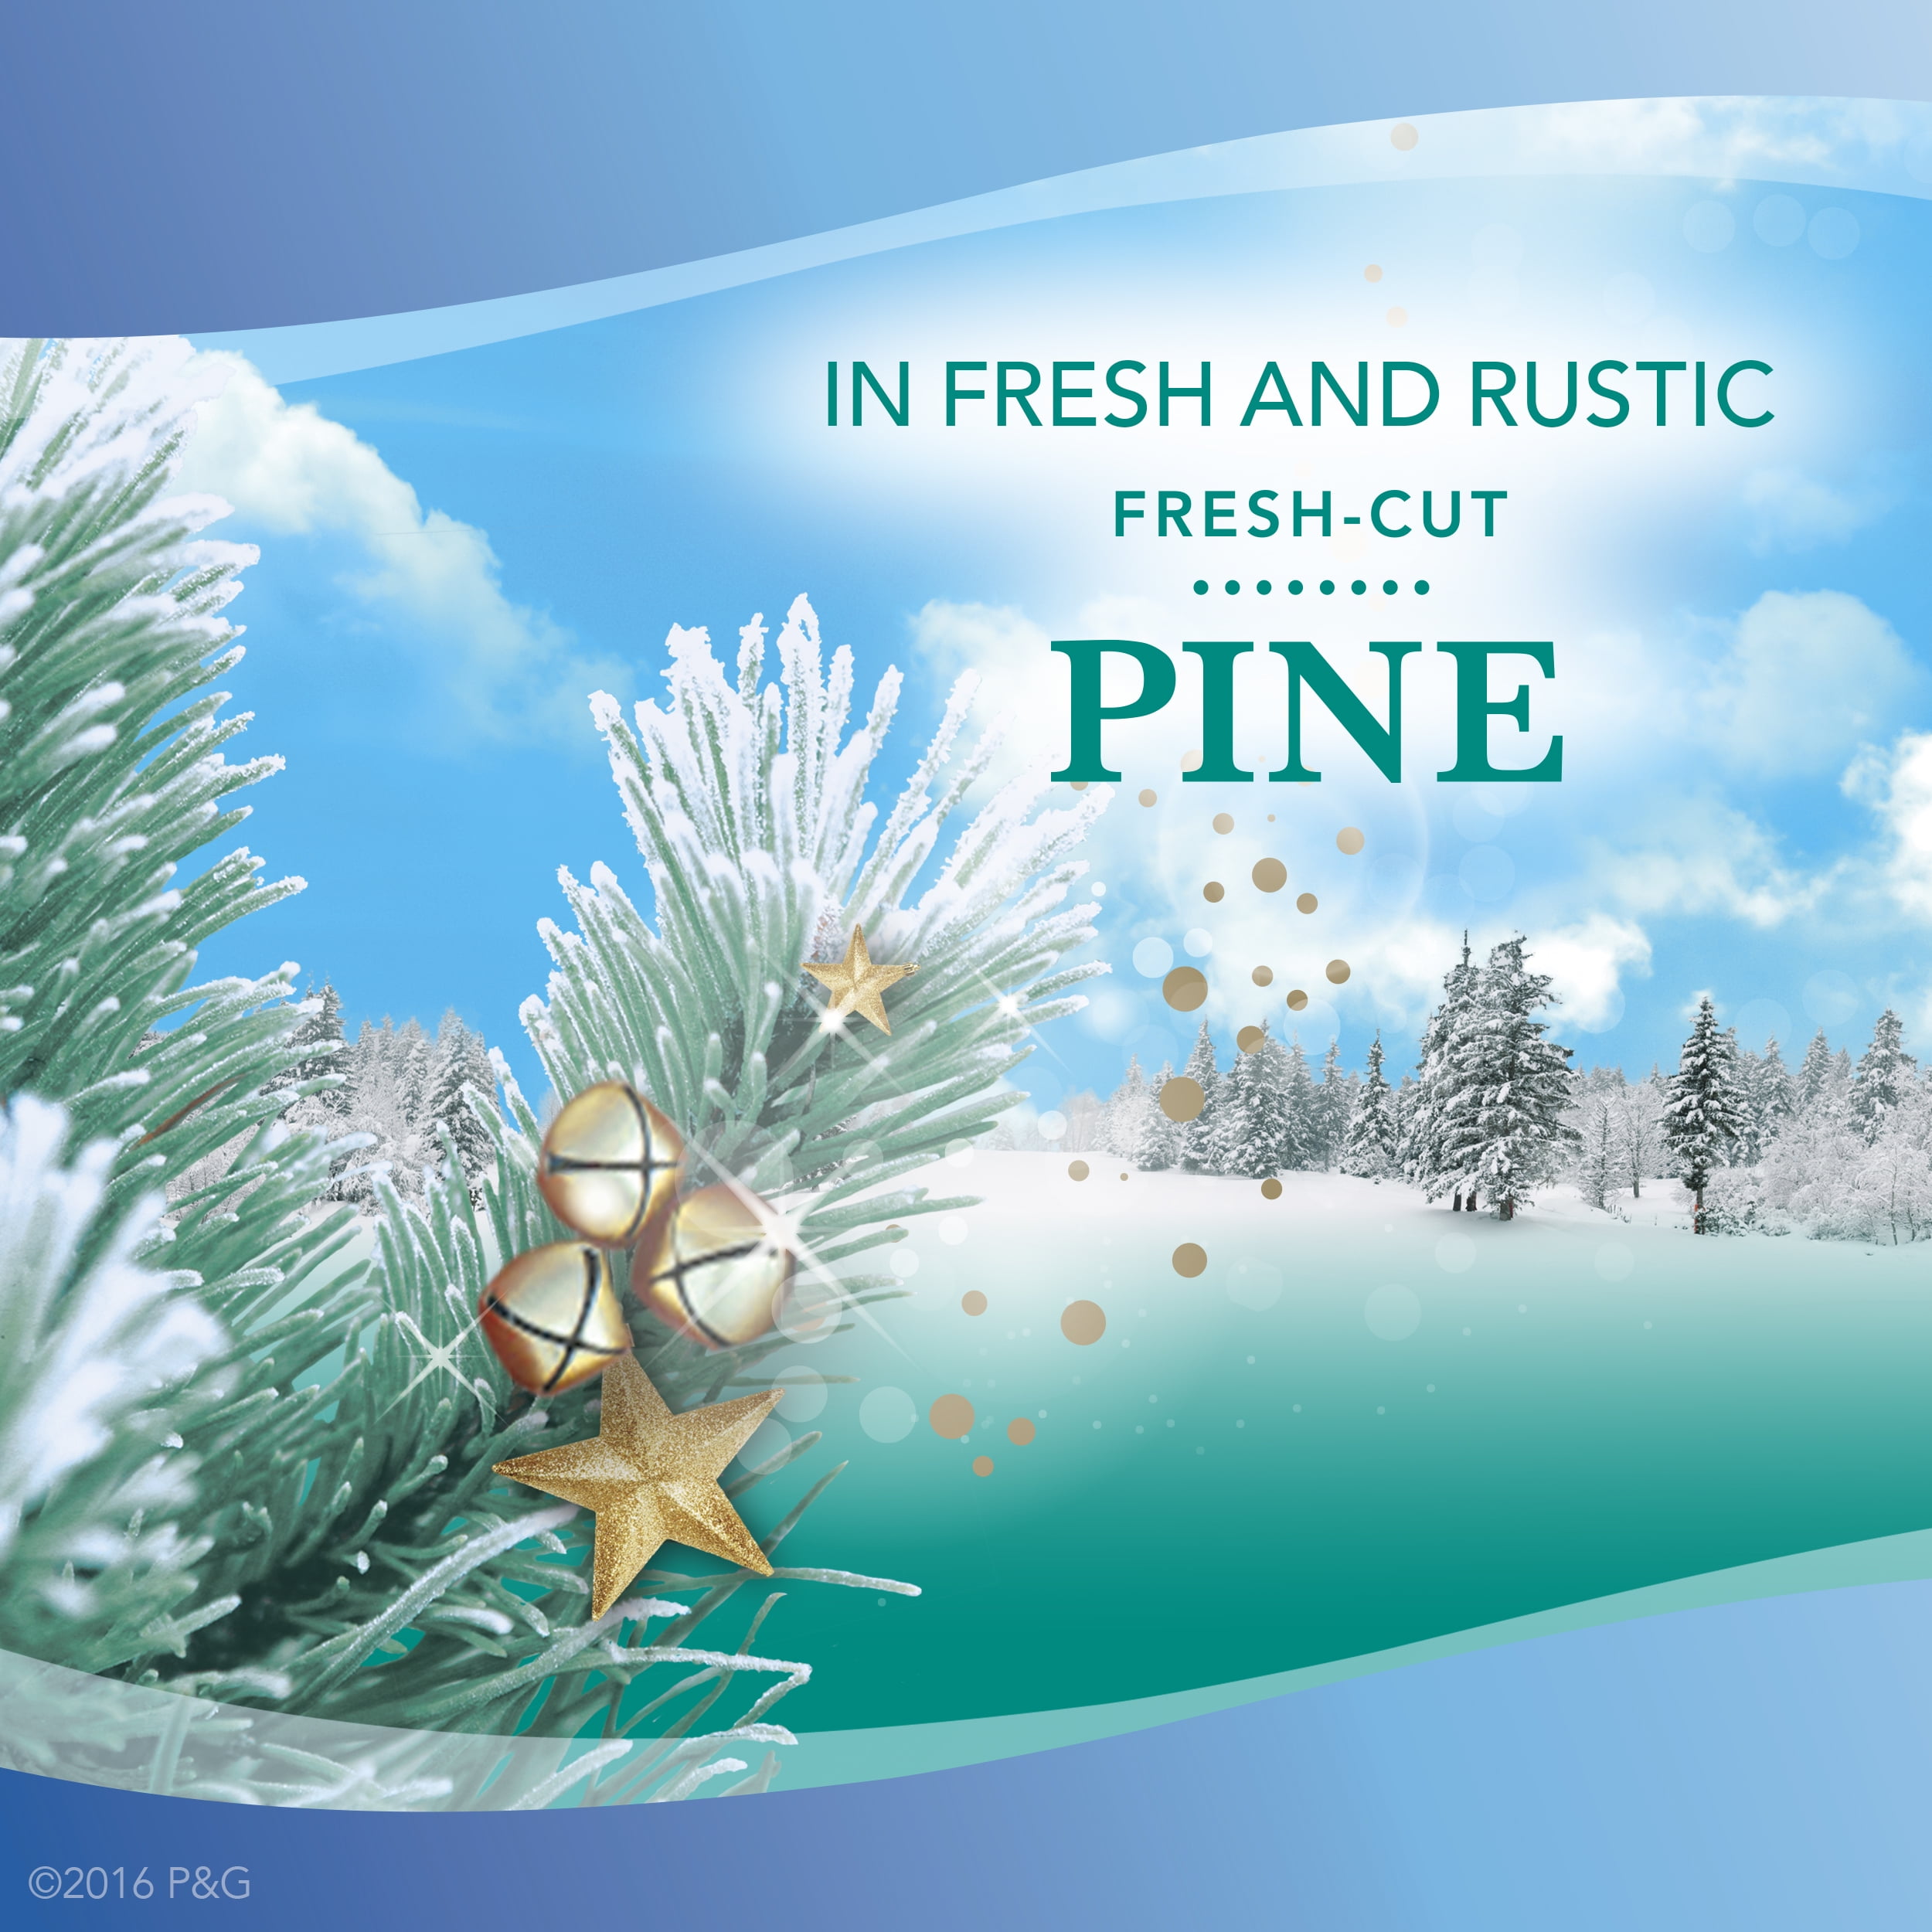 Febreze Wax Melts Air Freshener, Fresh-Cut Pine, Pack of 6 Wax Melt Cubes